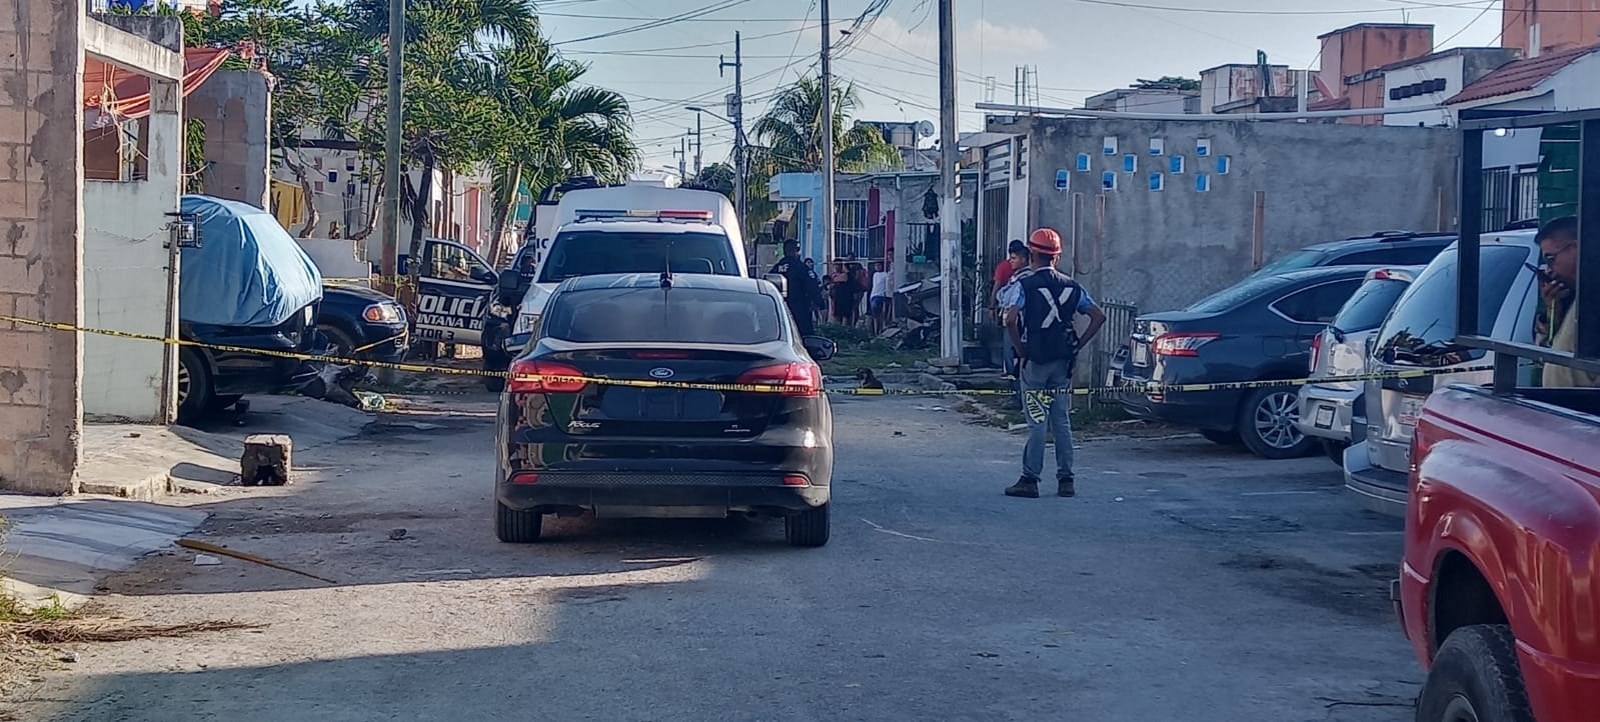 Cuerpo en la Región 247 en Cancún: Autoridades determinan que fue suicidio